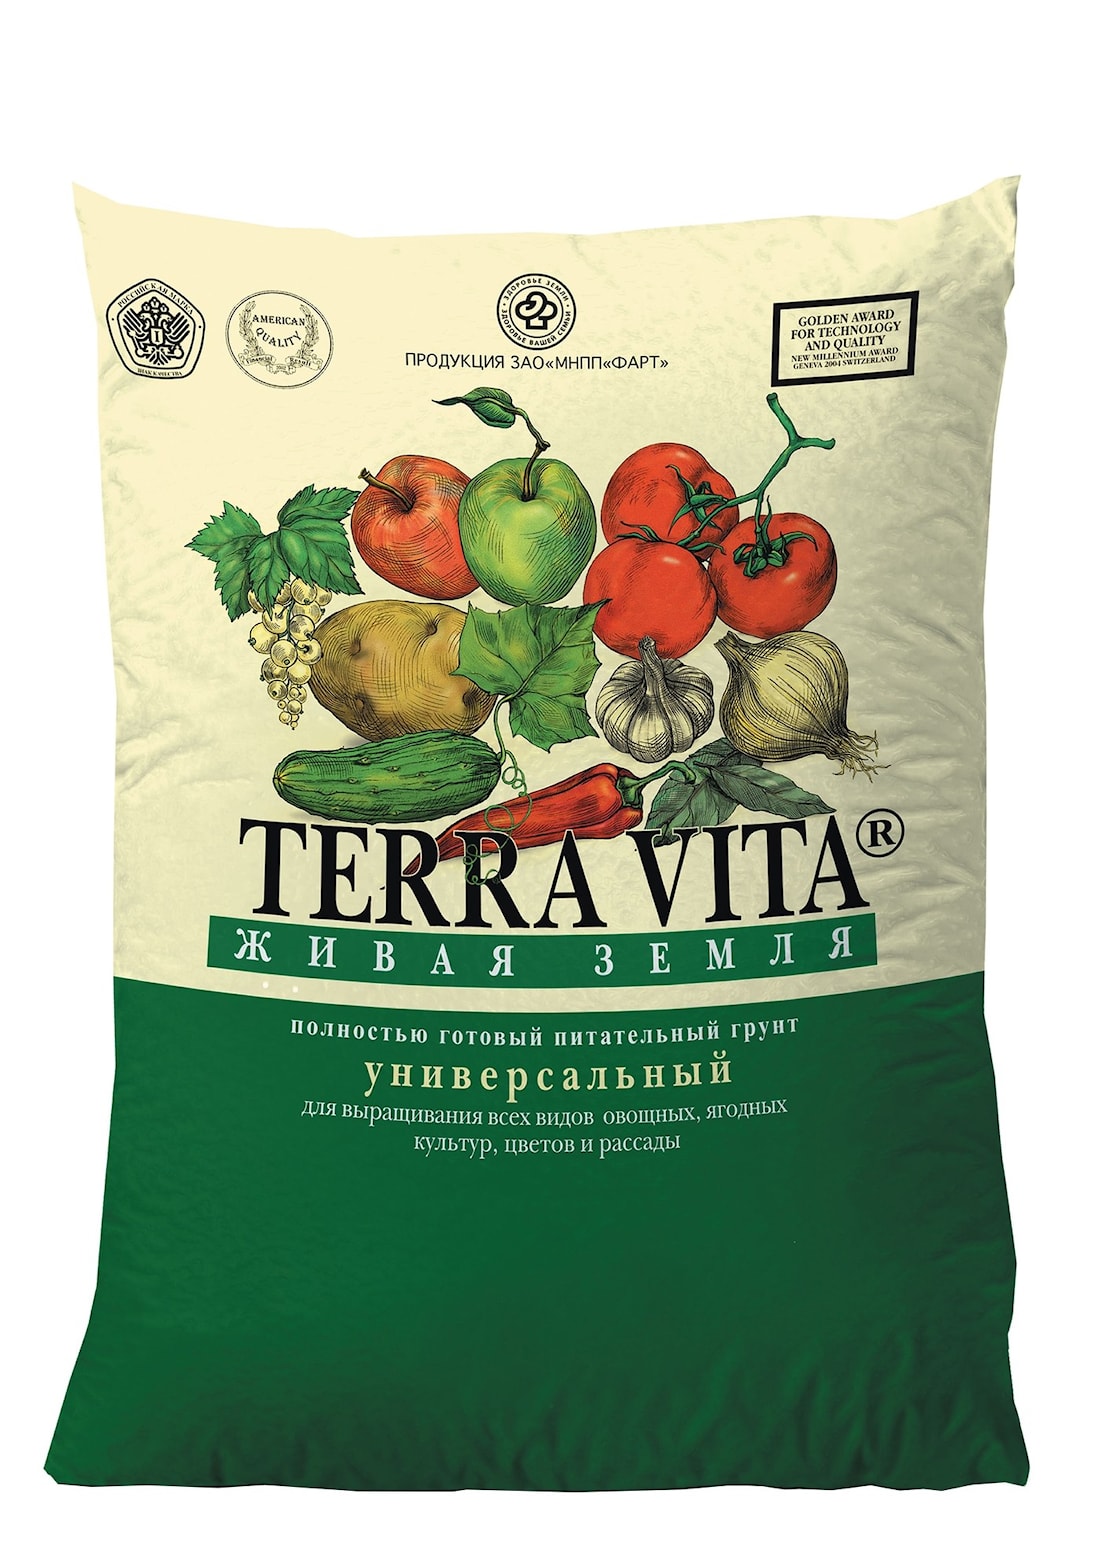 Купить грунты для растений серии Terra Vita (Теравита) в Полоцке и Новополоцке цена по запросу в магазине  